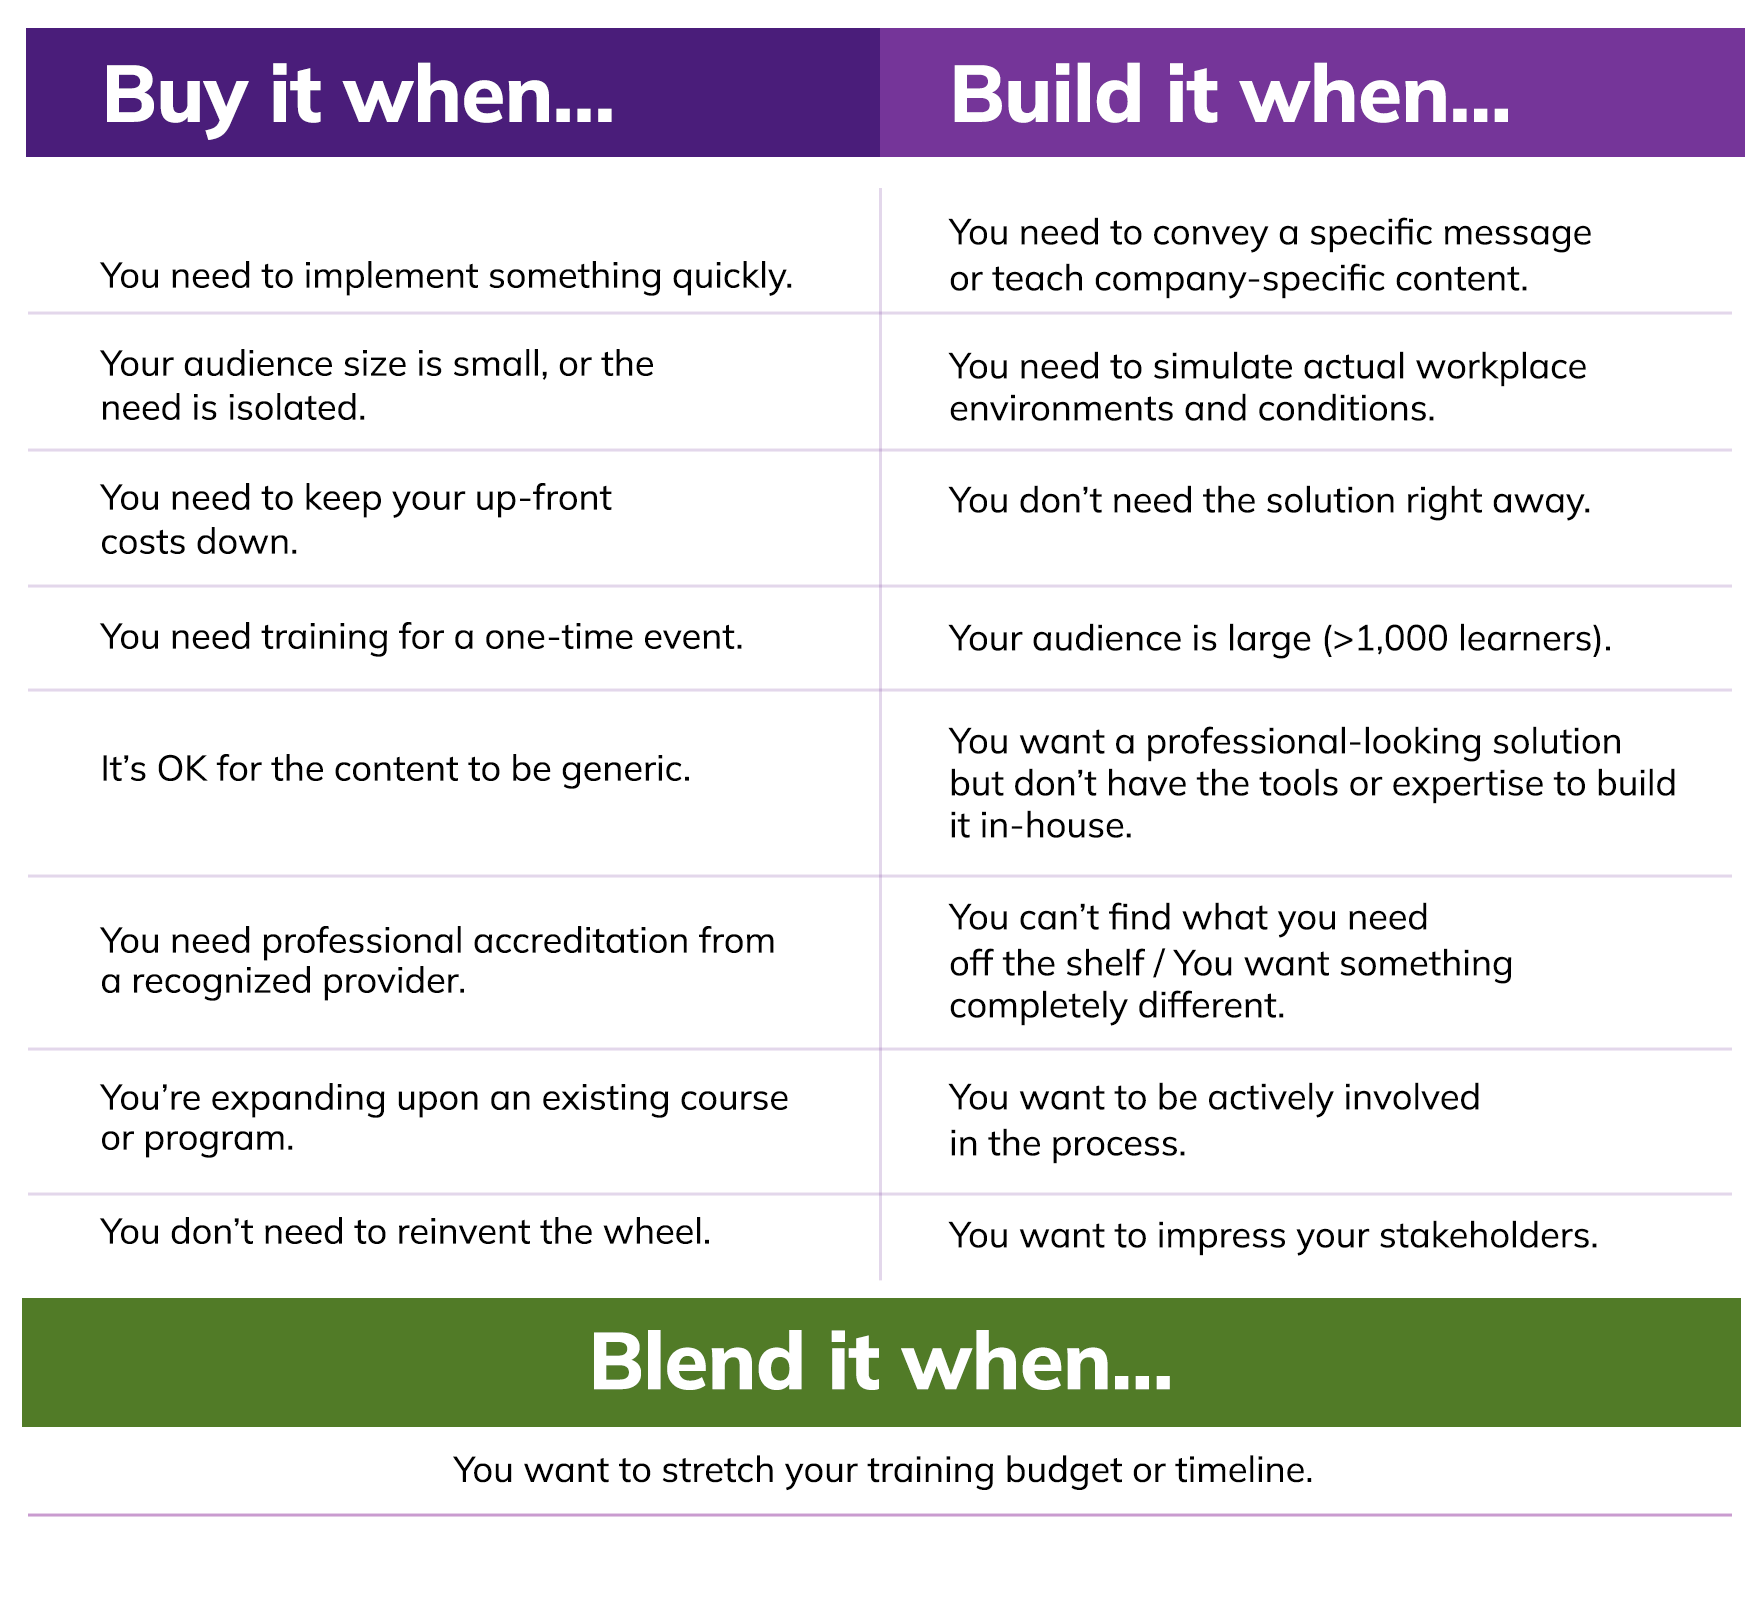 Buy_Build_Blend